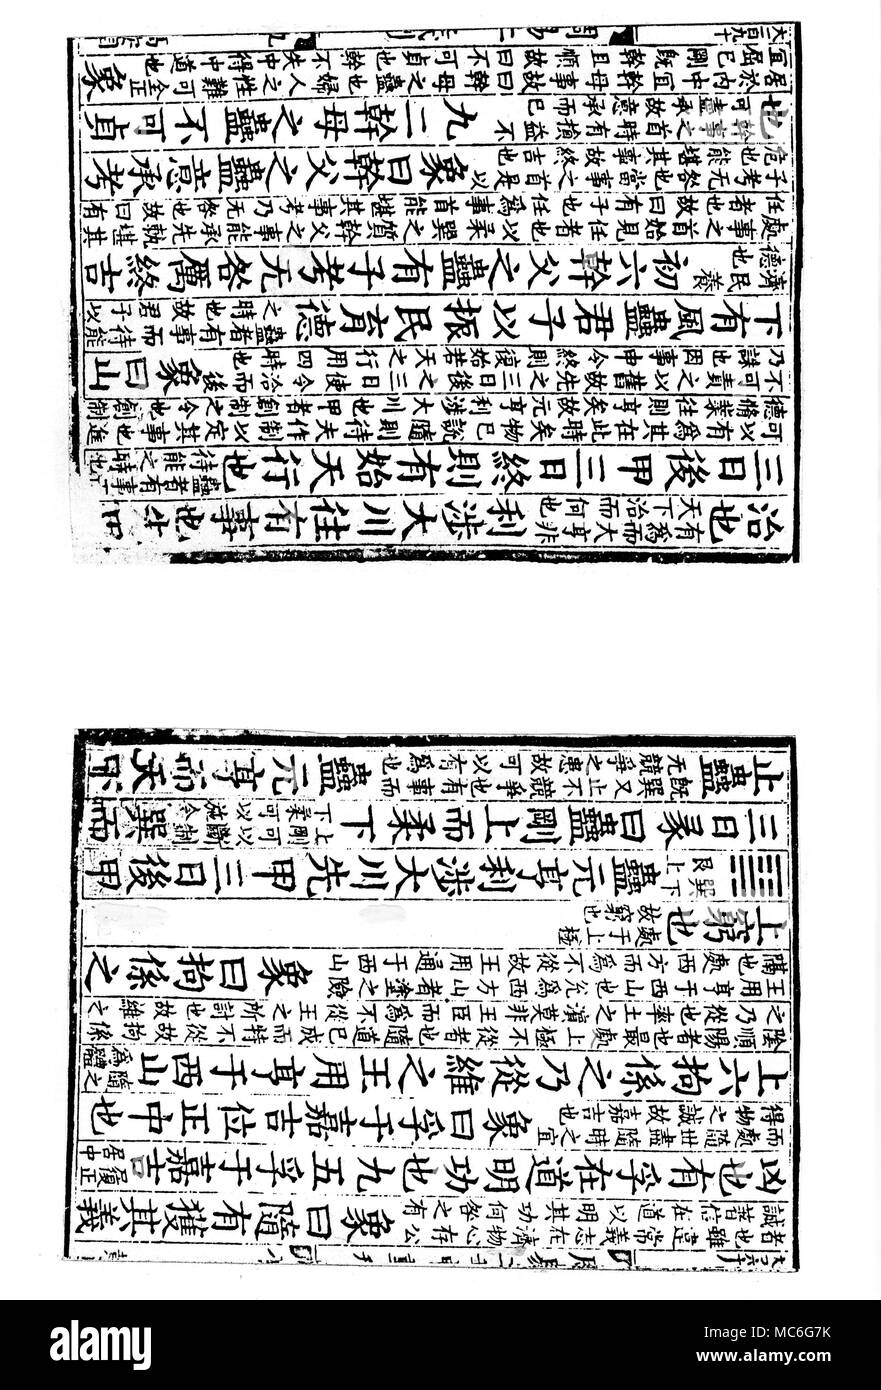 I Ching - HEXAGRAMA Nº 18 - KU La 18ª hexagrama del Libro Sagrado de los cambios, o el I Ching o el libro de Chou, utilizado en China para la adivinación y como una fuente de investigación filosófica. Esta doble página establece el principio de la lectura de este hexagrama en la tercera columna de la izquierda, de la página derecha: las dos páginas son de un décimo siglo chino blockbook impreso. El hexagrama, de seis líneas se realiza desde la reunión de la parte superior del Ken (o 'montagne') con la parte inferior del sol (o "Viento penetrante"), y es seguida por la tradicional justificación relativa a esta reunión de Foto de stock